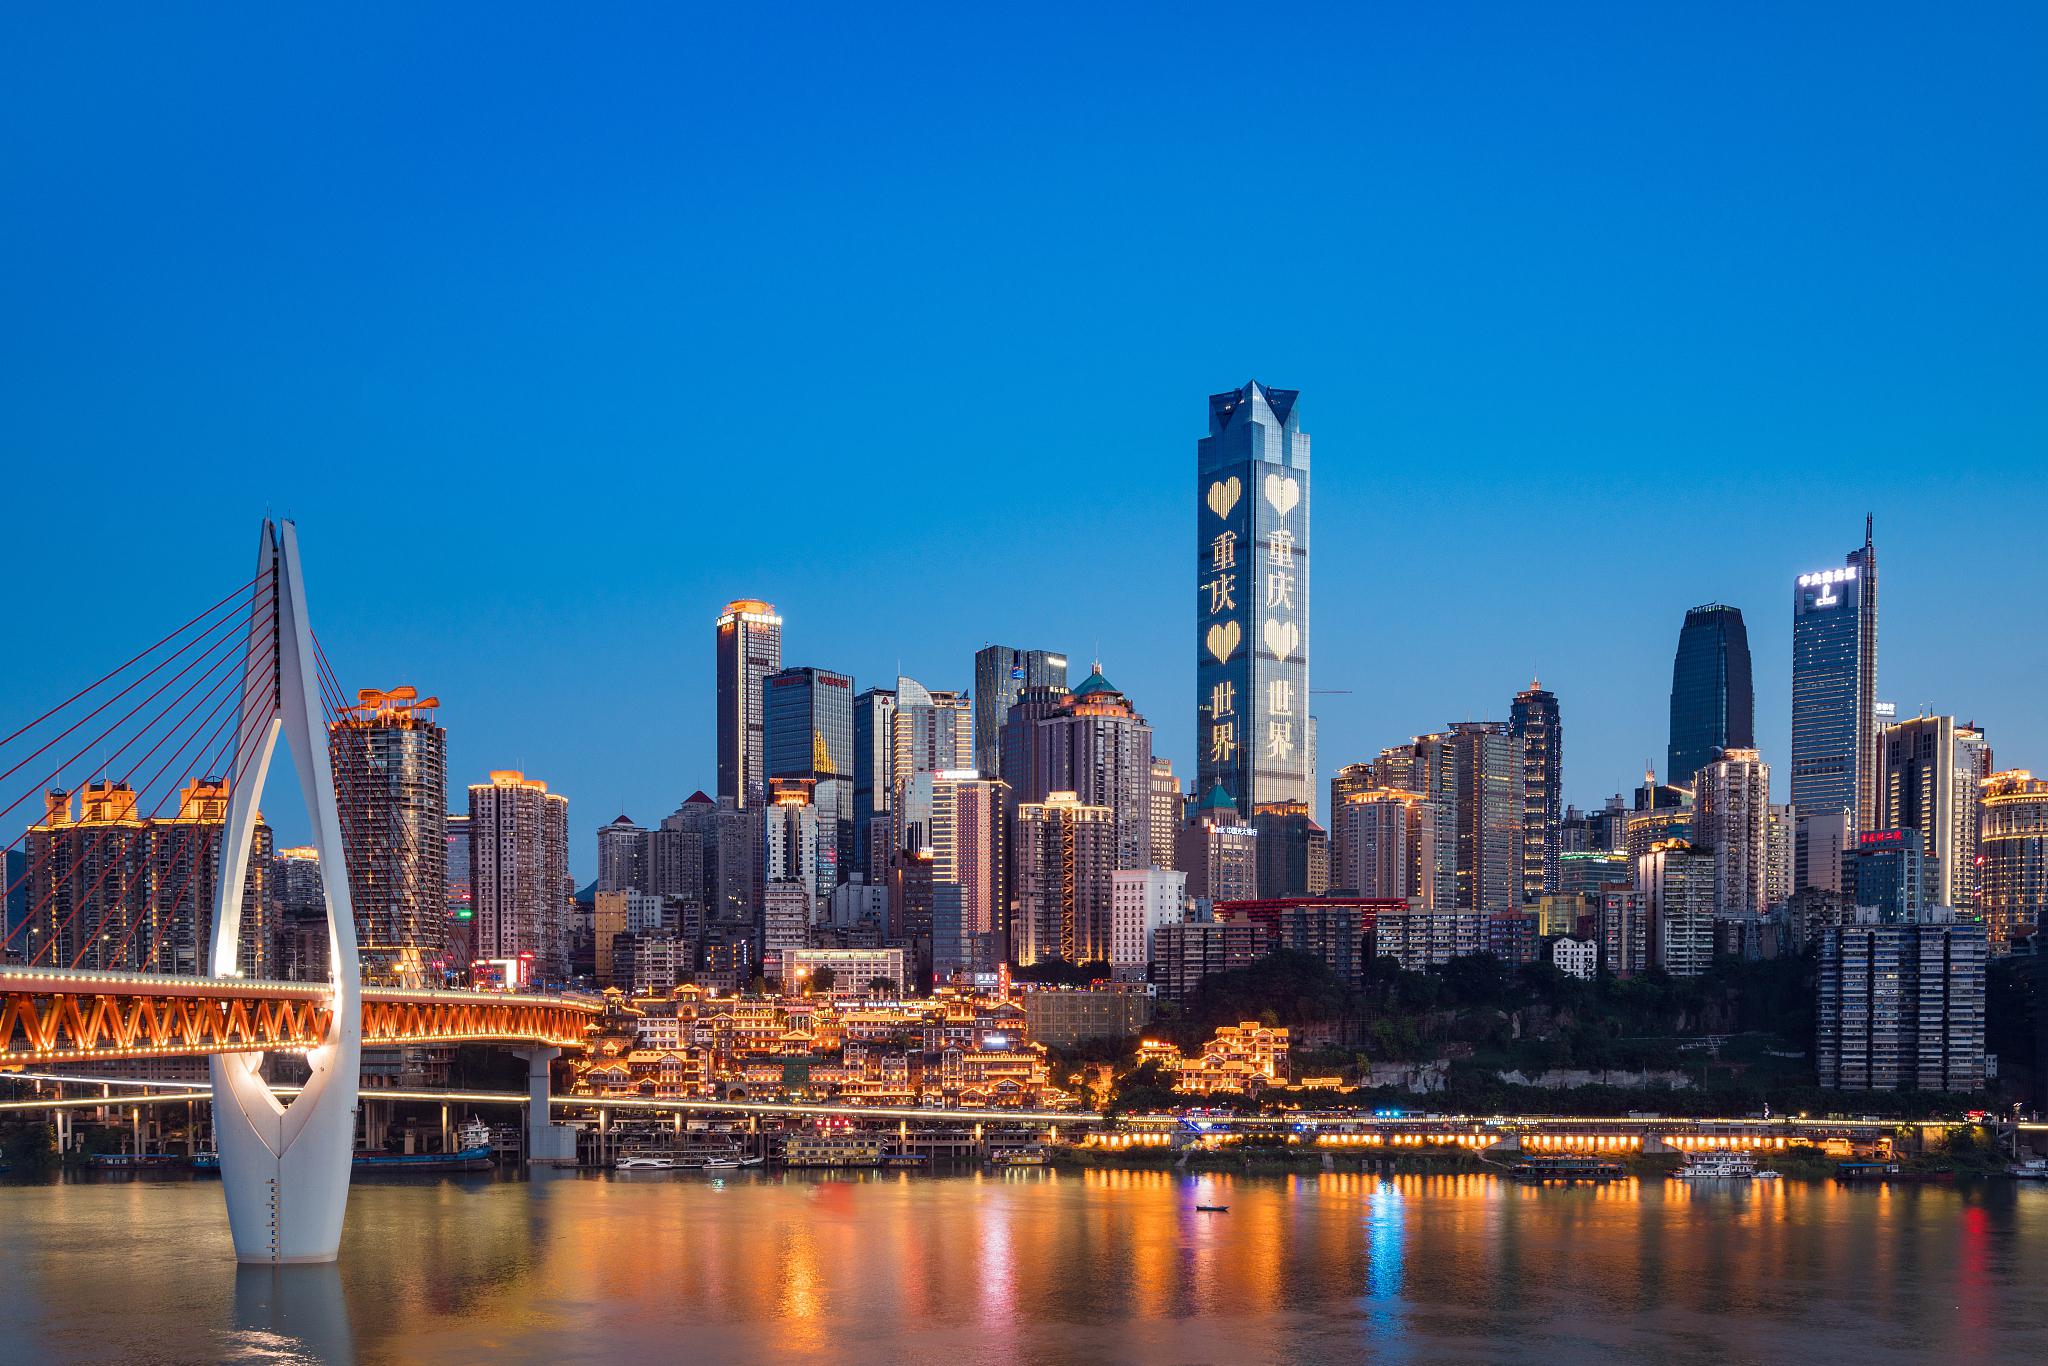 下面介绍重庆的十大必游景点,带你解锁不一样的魅力